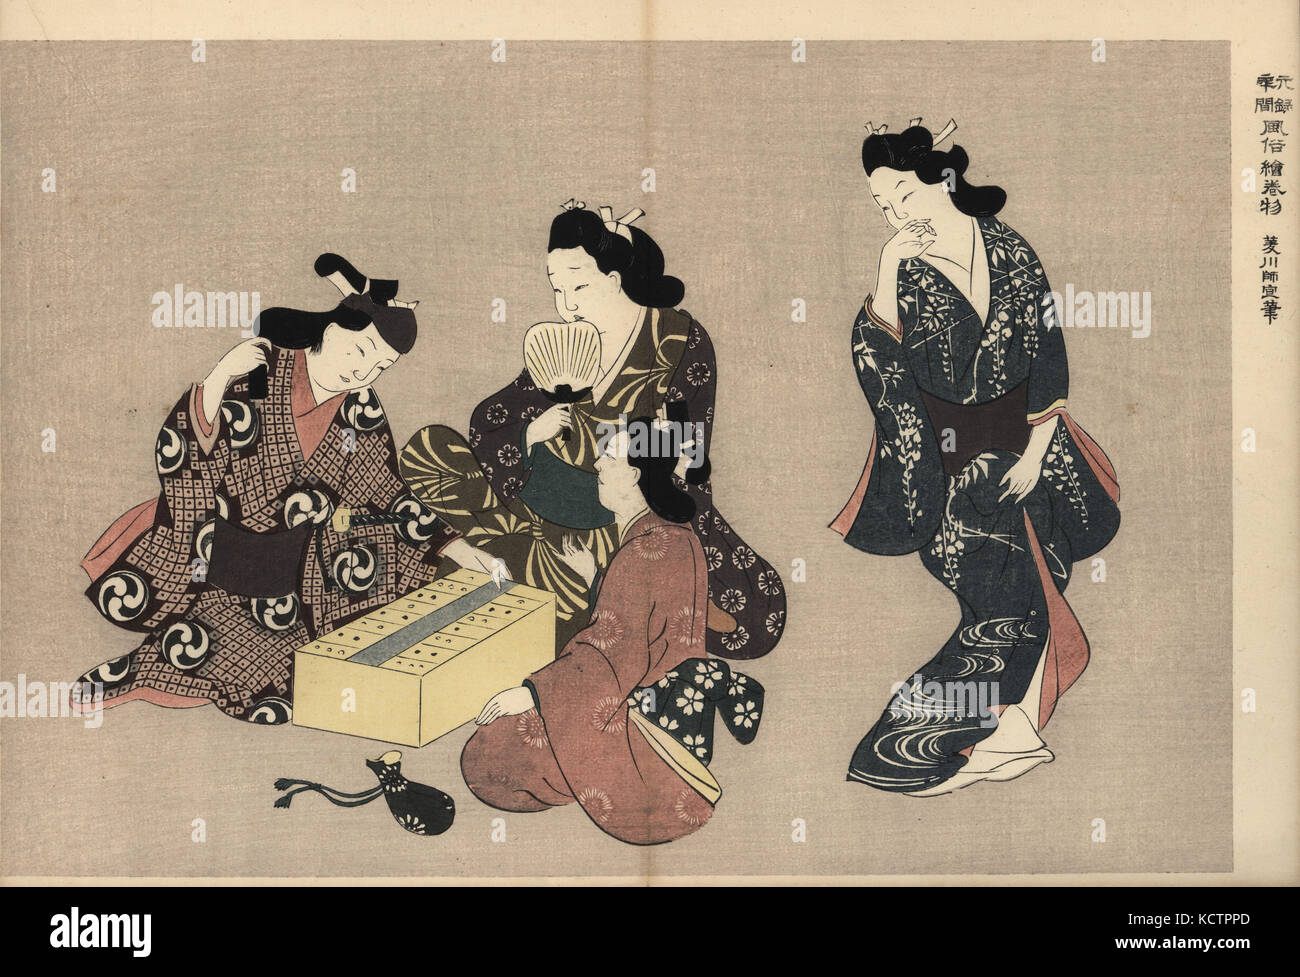 Cortigiane ballando e giocando sugoroku (Giapponese backgammon) con un cliente nel piacere trimestri. Woodblock print da Hishikawa Moronobu (1618-1694) da Fuzoku Emakimono, scorrimento immagine dell'acqua Commercio, Tokyo, ristampa di circa 1880. Foto Stock